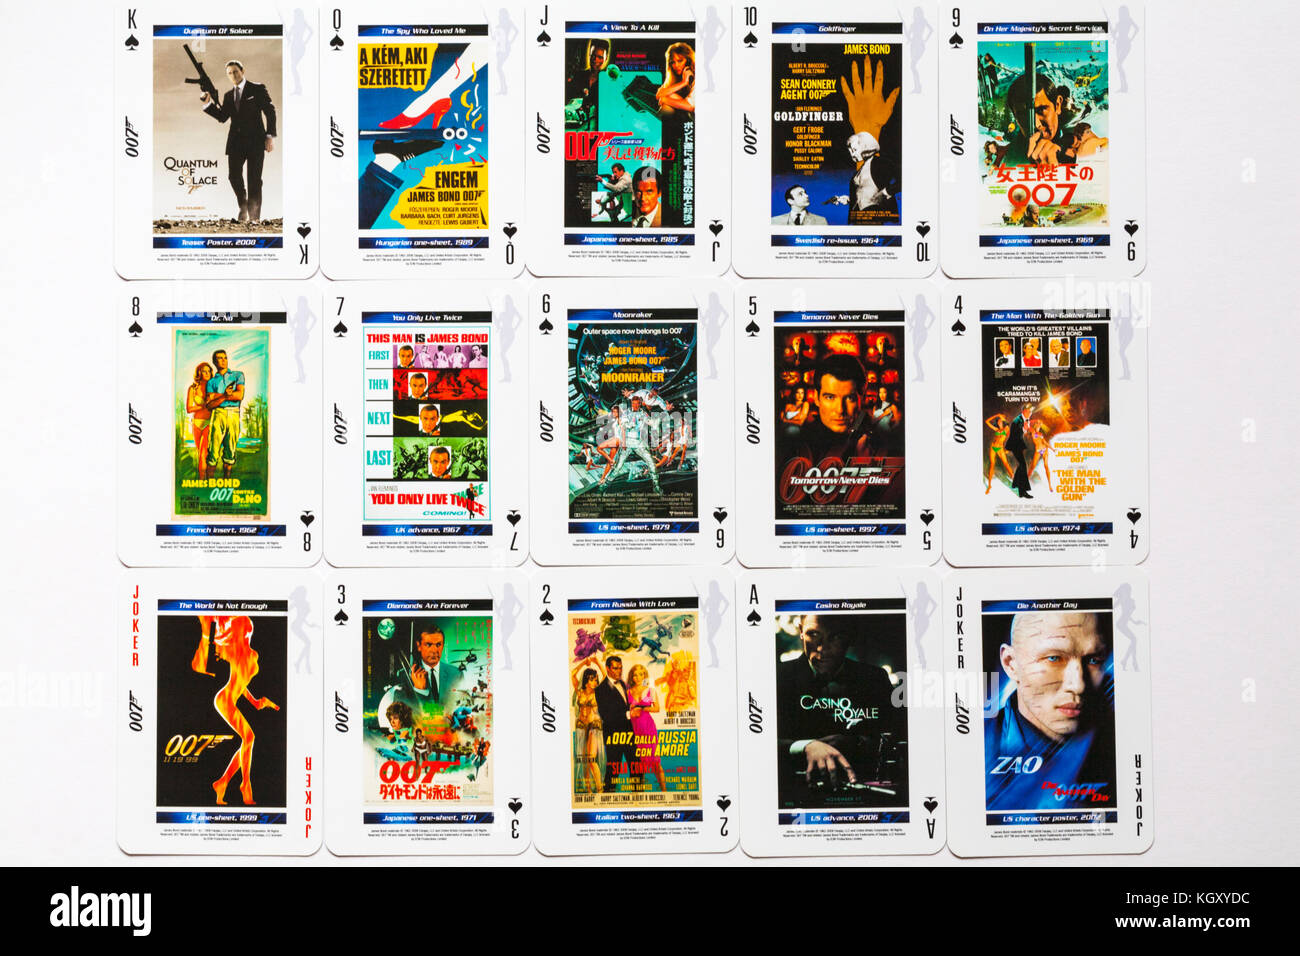 007 cartes à jouer - pique suit de 007 cartes à jouer The Bond Movie Poster étalées avec les visages tournés vers le haut sur fond blanc Banque D'Images